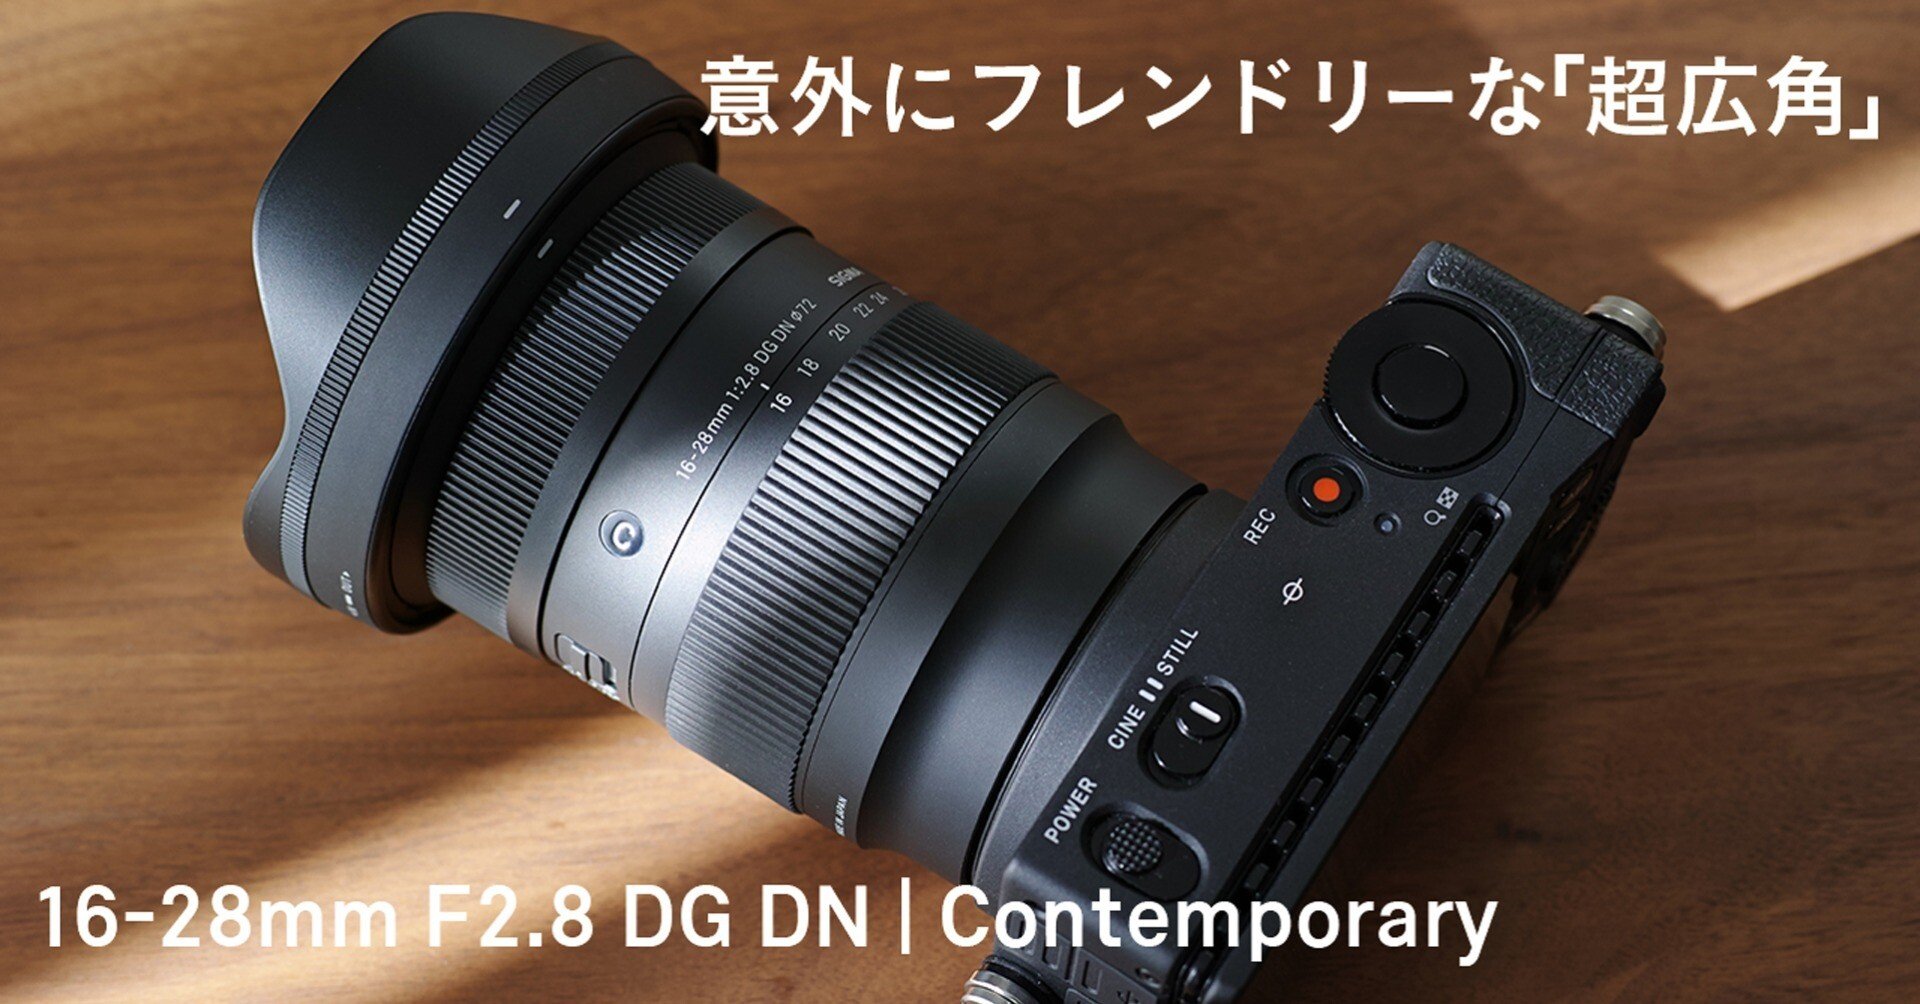 意外にフレンドリーな「超広角」 16-28mm F2.8 DG DN | Contemporary ...